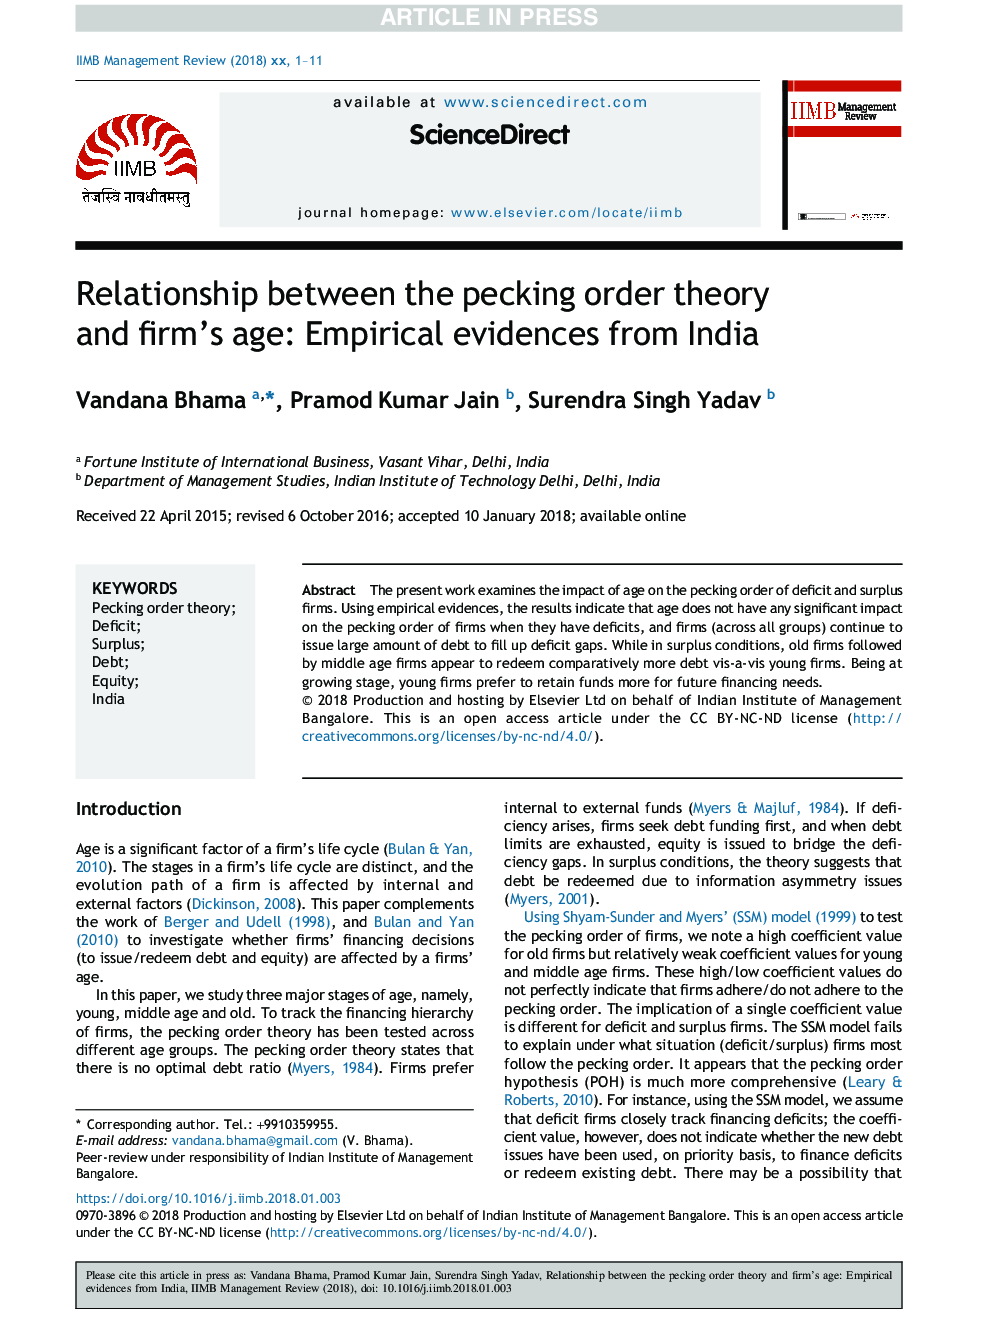 رابطه بین نظریه نظم پیکینگ و سن شرکت: شواهد تجربی از هند 